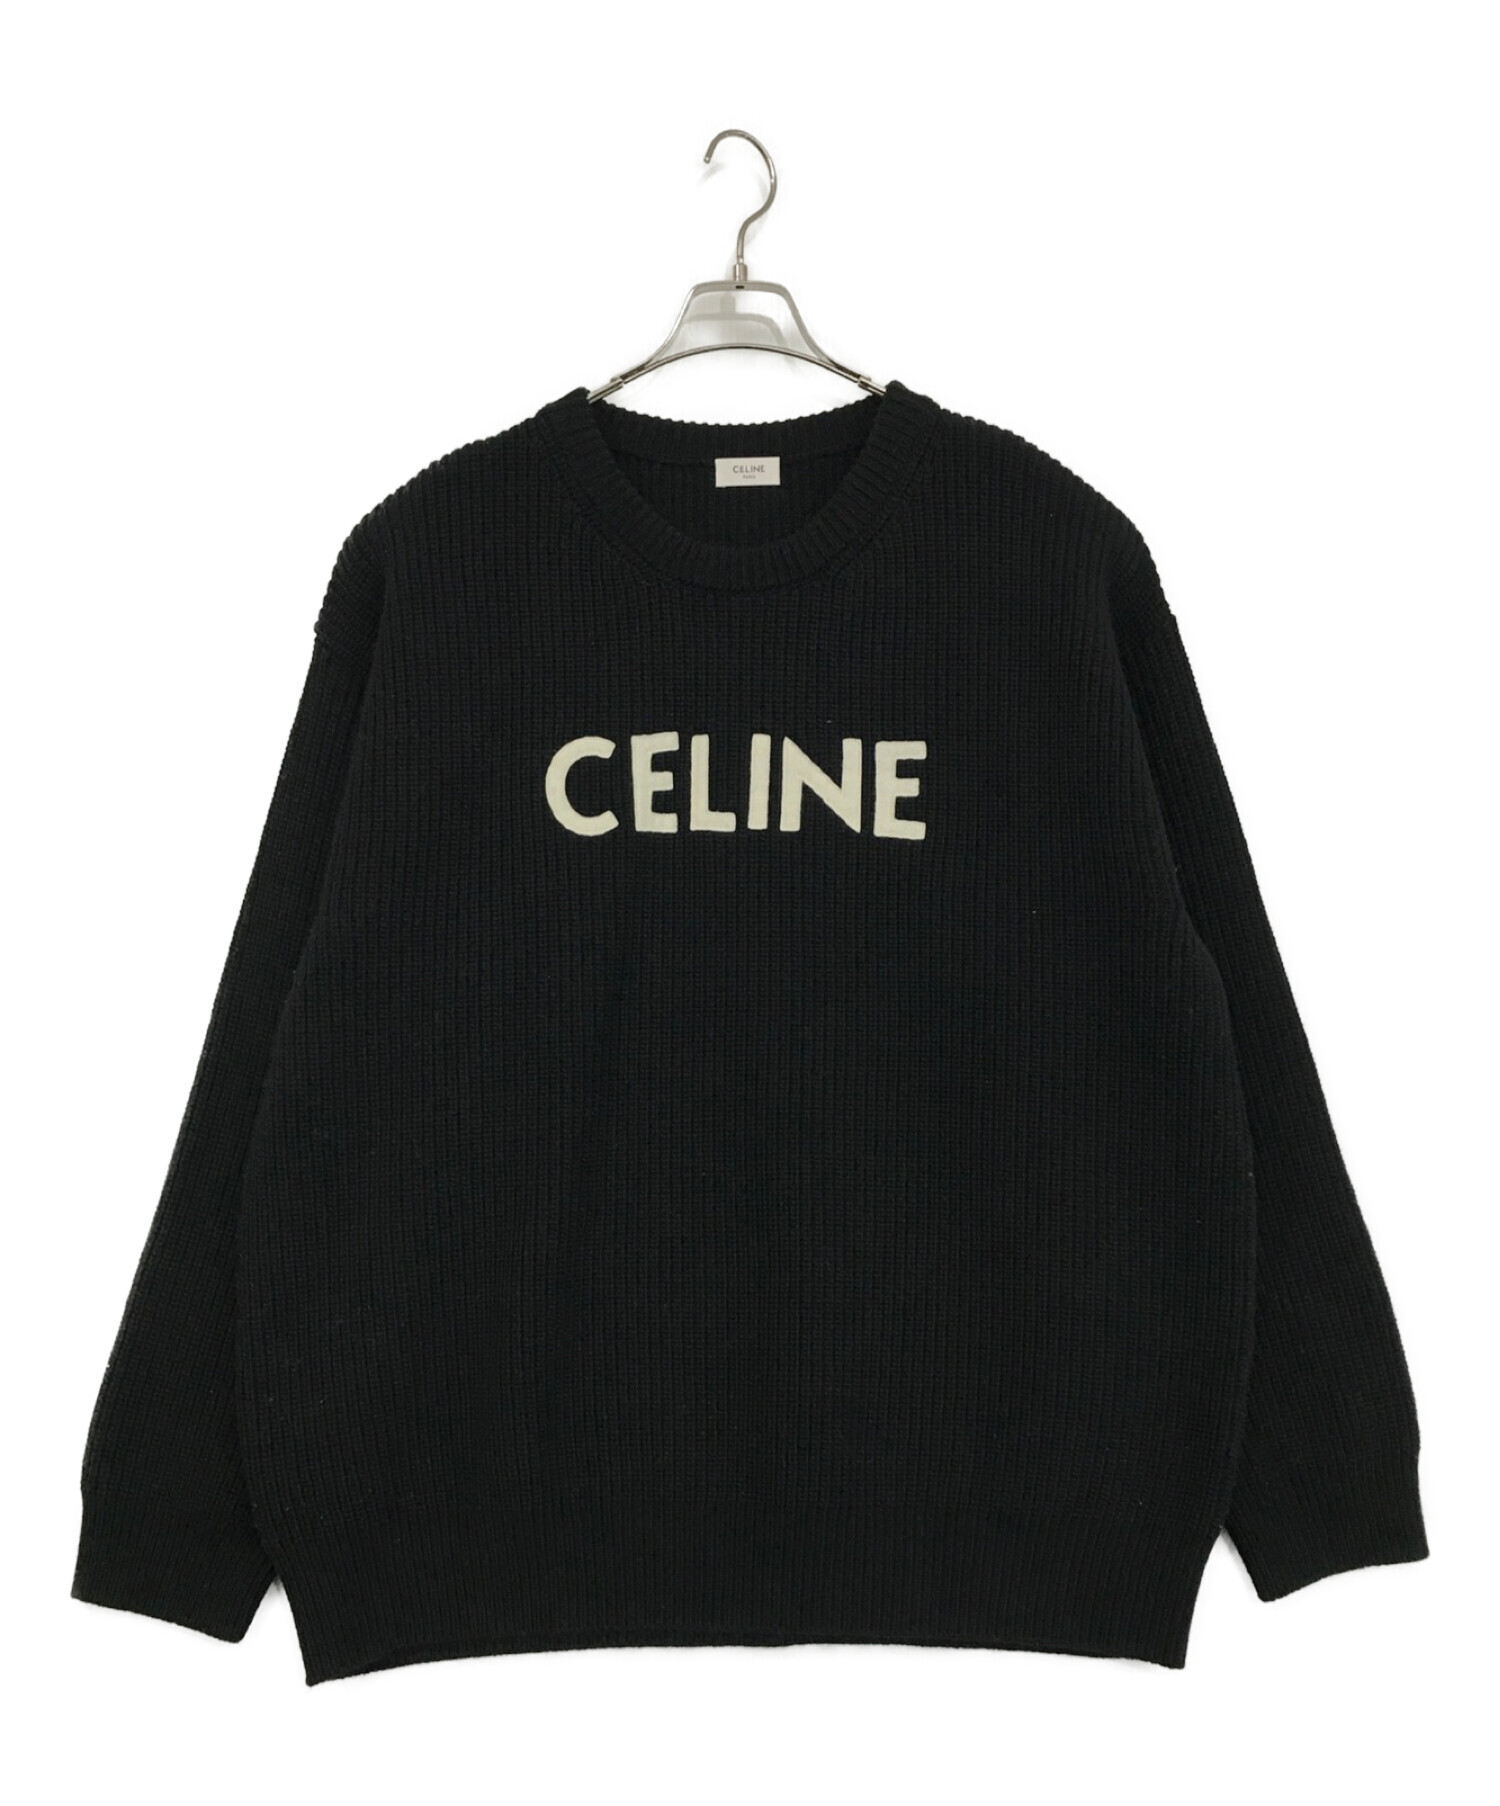 有名ブランド 新品未使用 セリーヌCELINE オーバーサイズ セーター